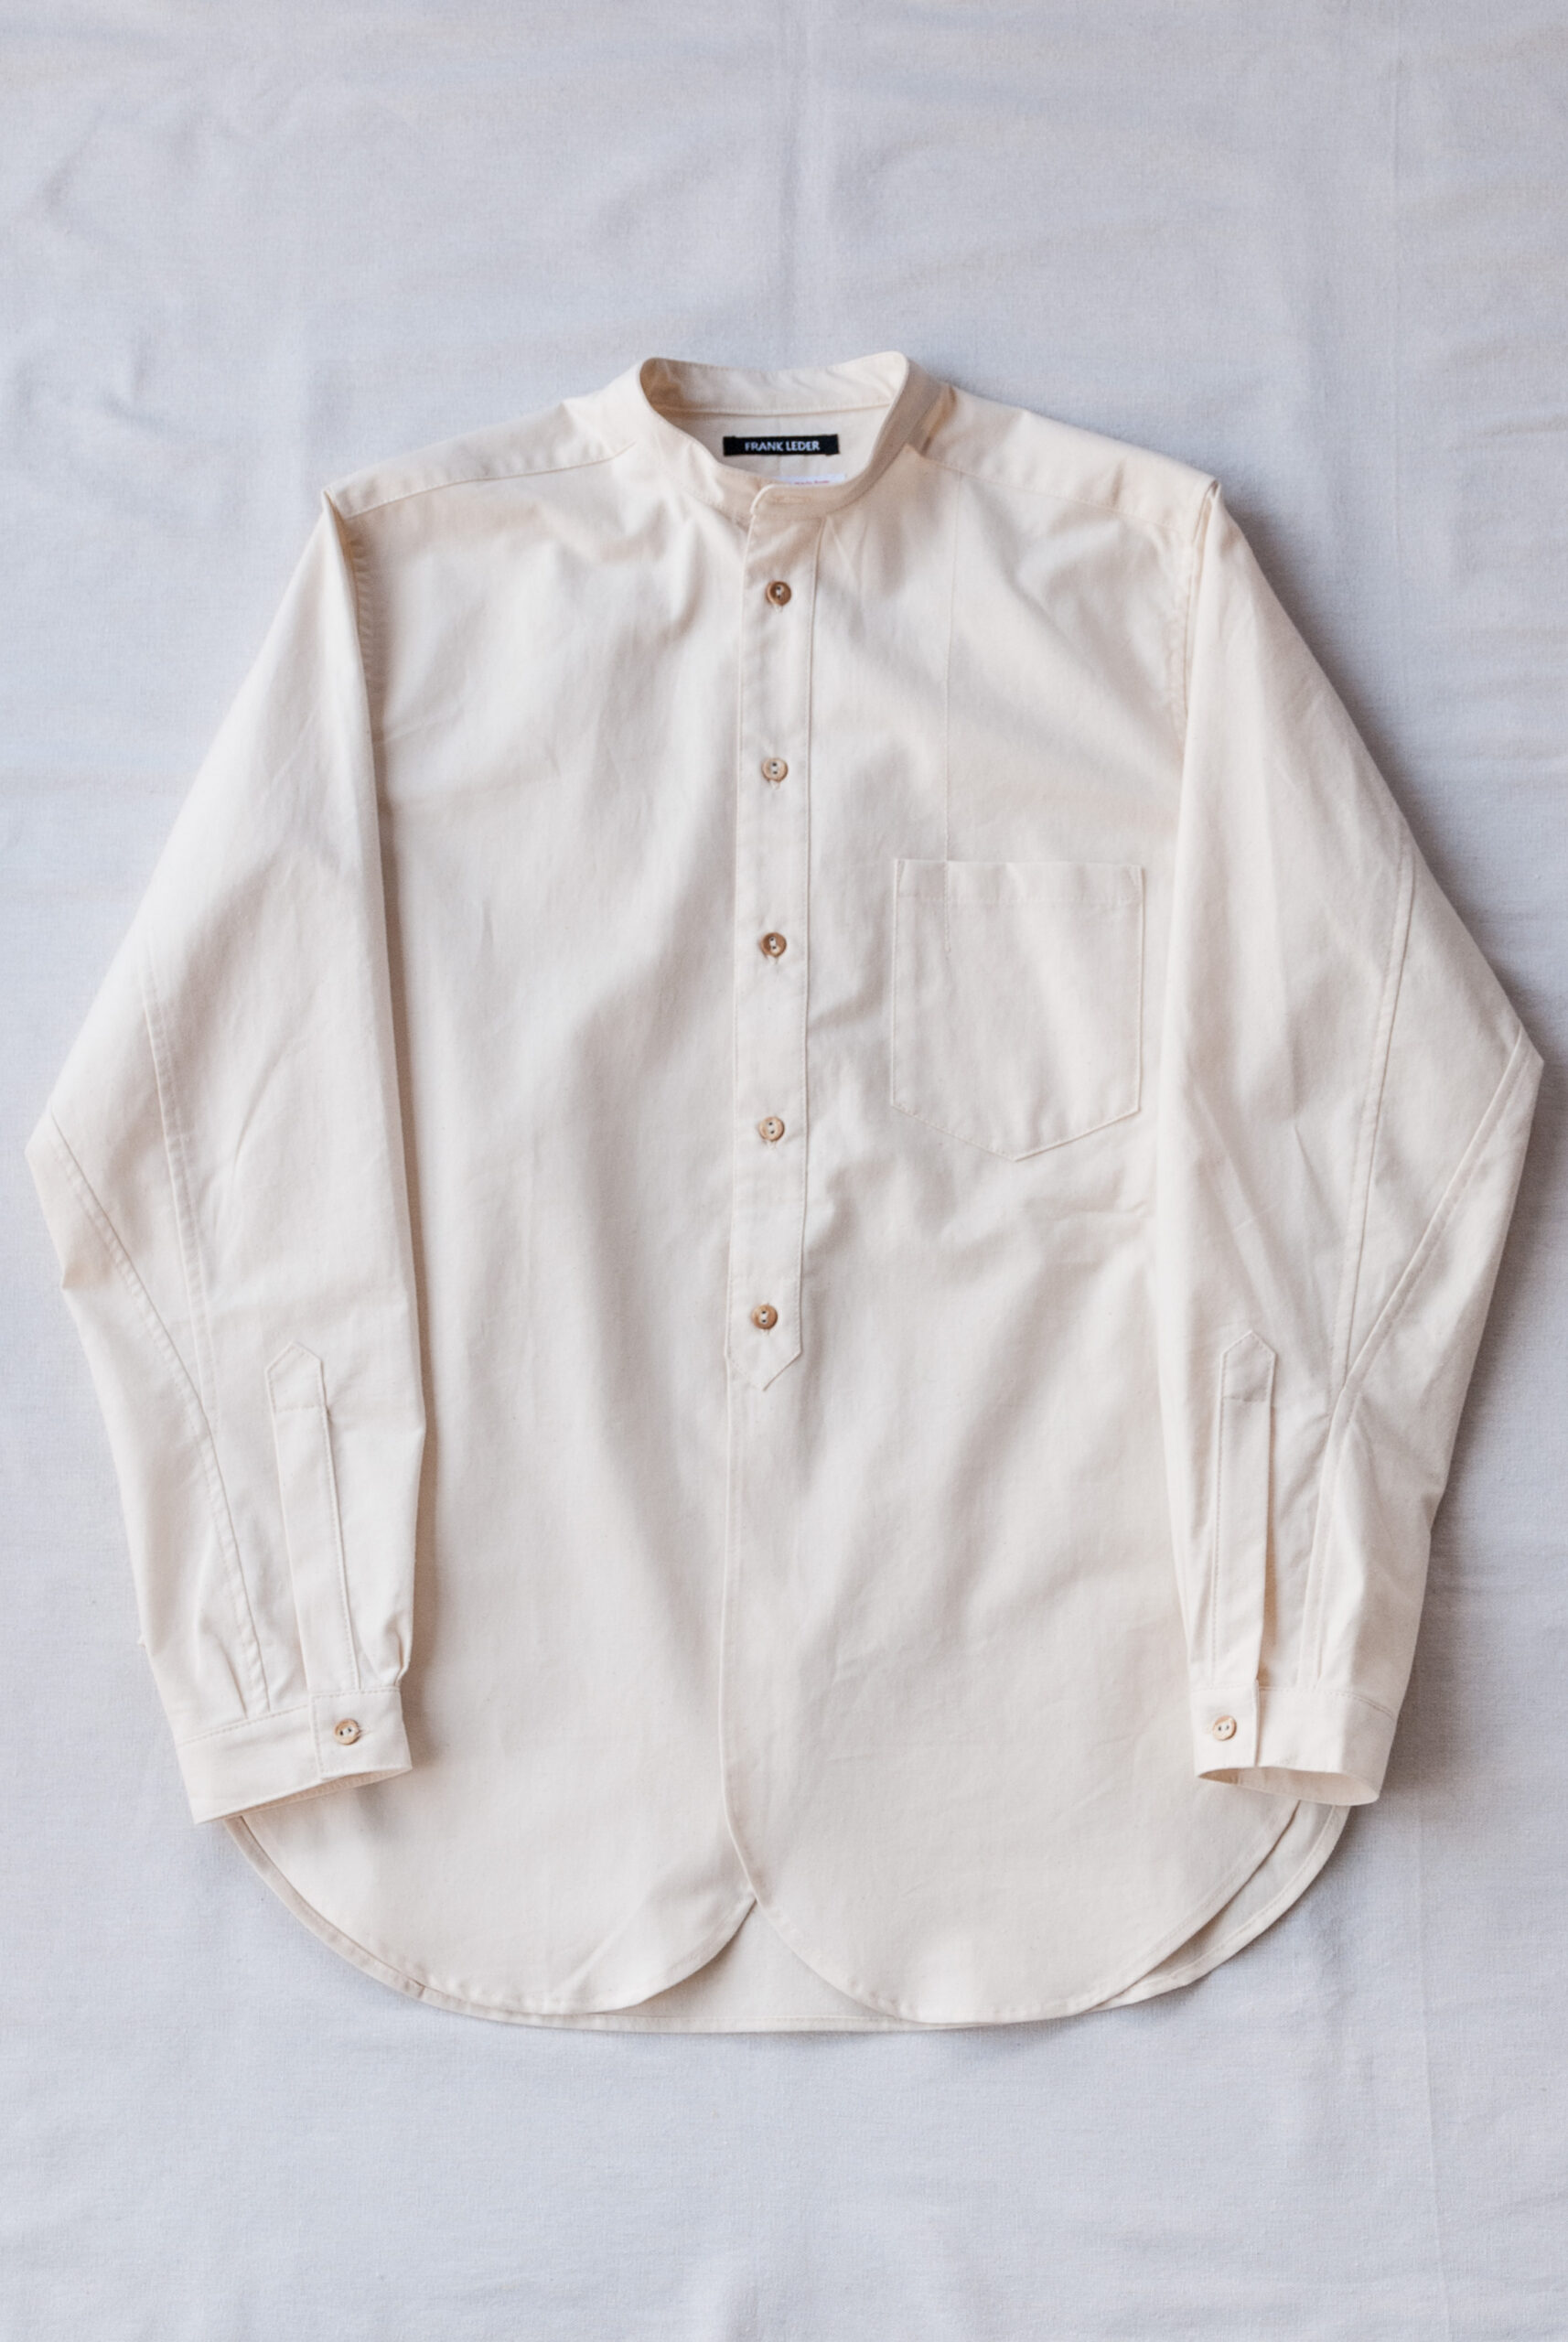 Frank Leder 60's Vintage Bedsheet Old Style Stand Collar Shirt